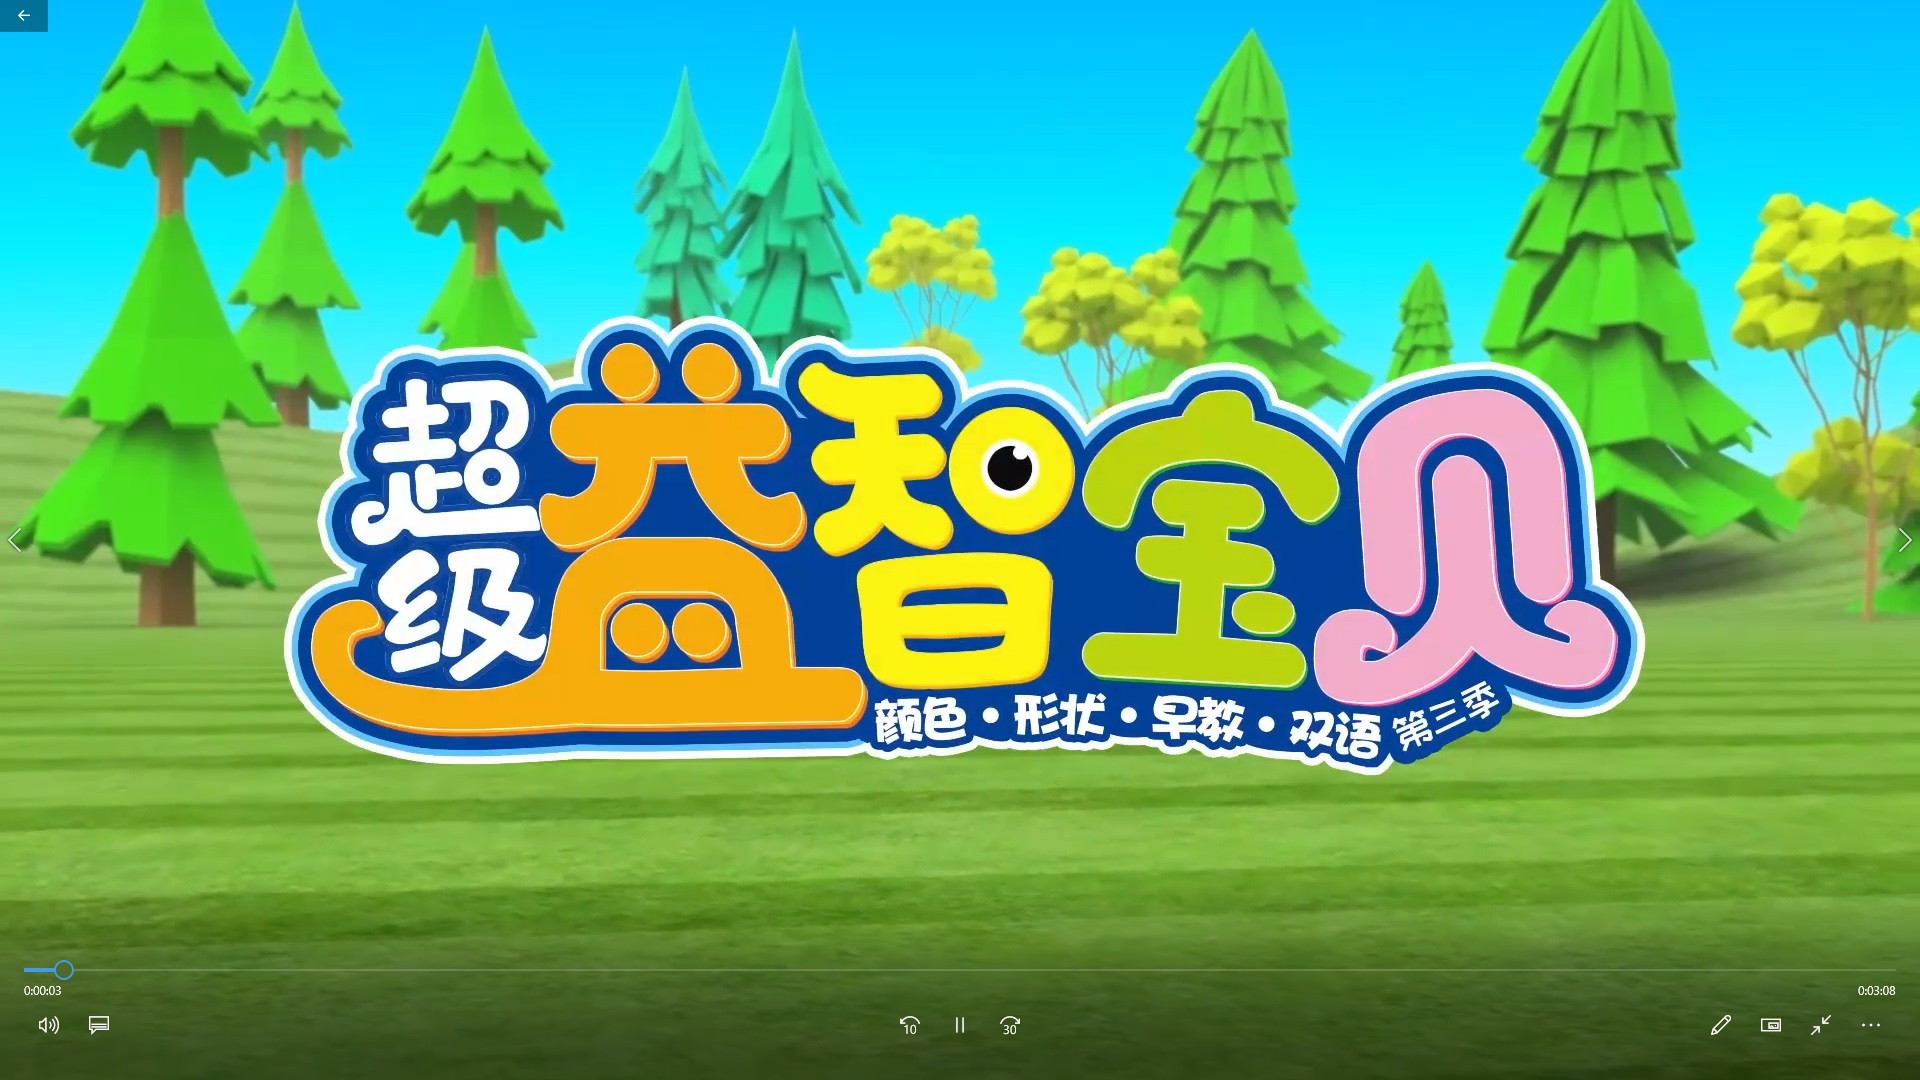 超级益智宝贝 第三季 中文版全42集国语高清1080P视频MP4免费下载-童话之家-以爱之心做事,感恩之心做人!